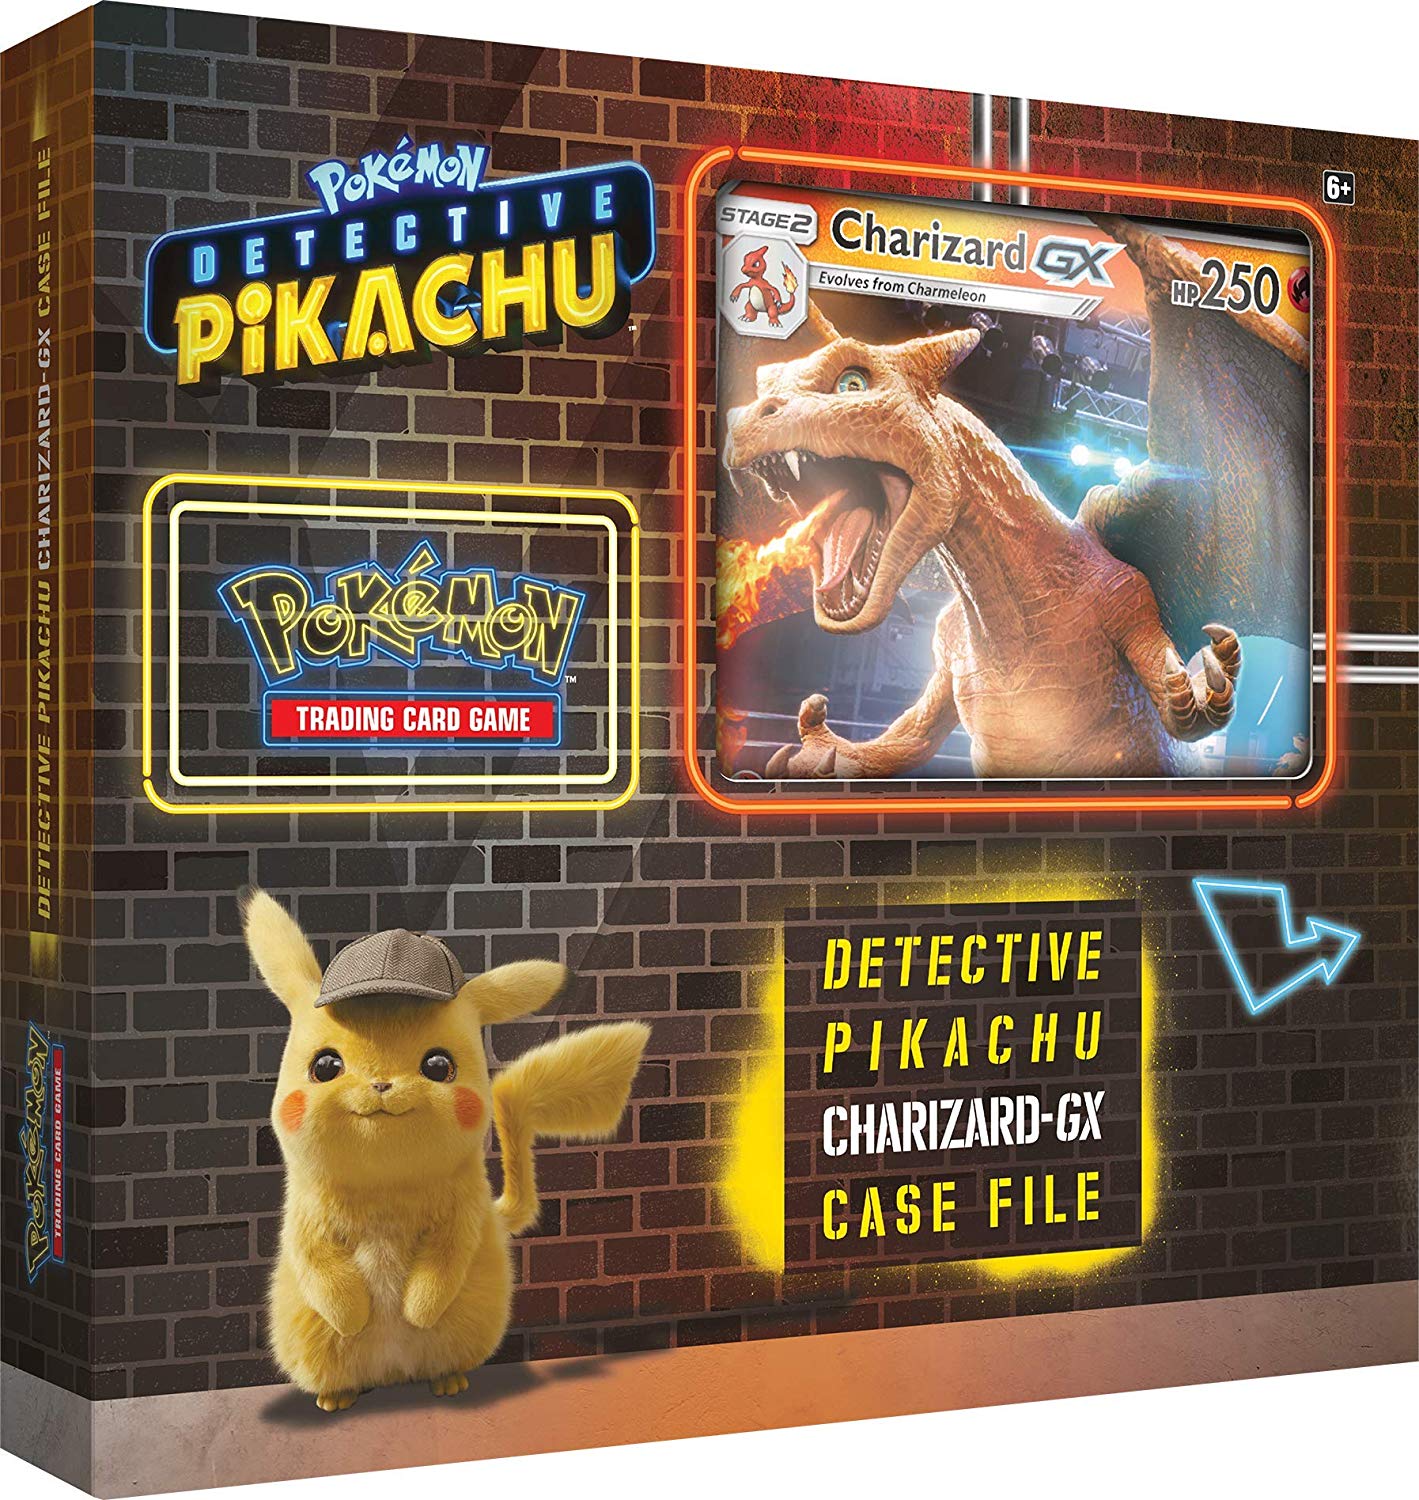 სამაგიდო თამაში პოკემონ TCG დეტექტივი პიკაჩუ ჩარიზარდი-GX ყუთში (POK TCG Detective Pikachu GX Box Charizard) სამაგიდო თამაში